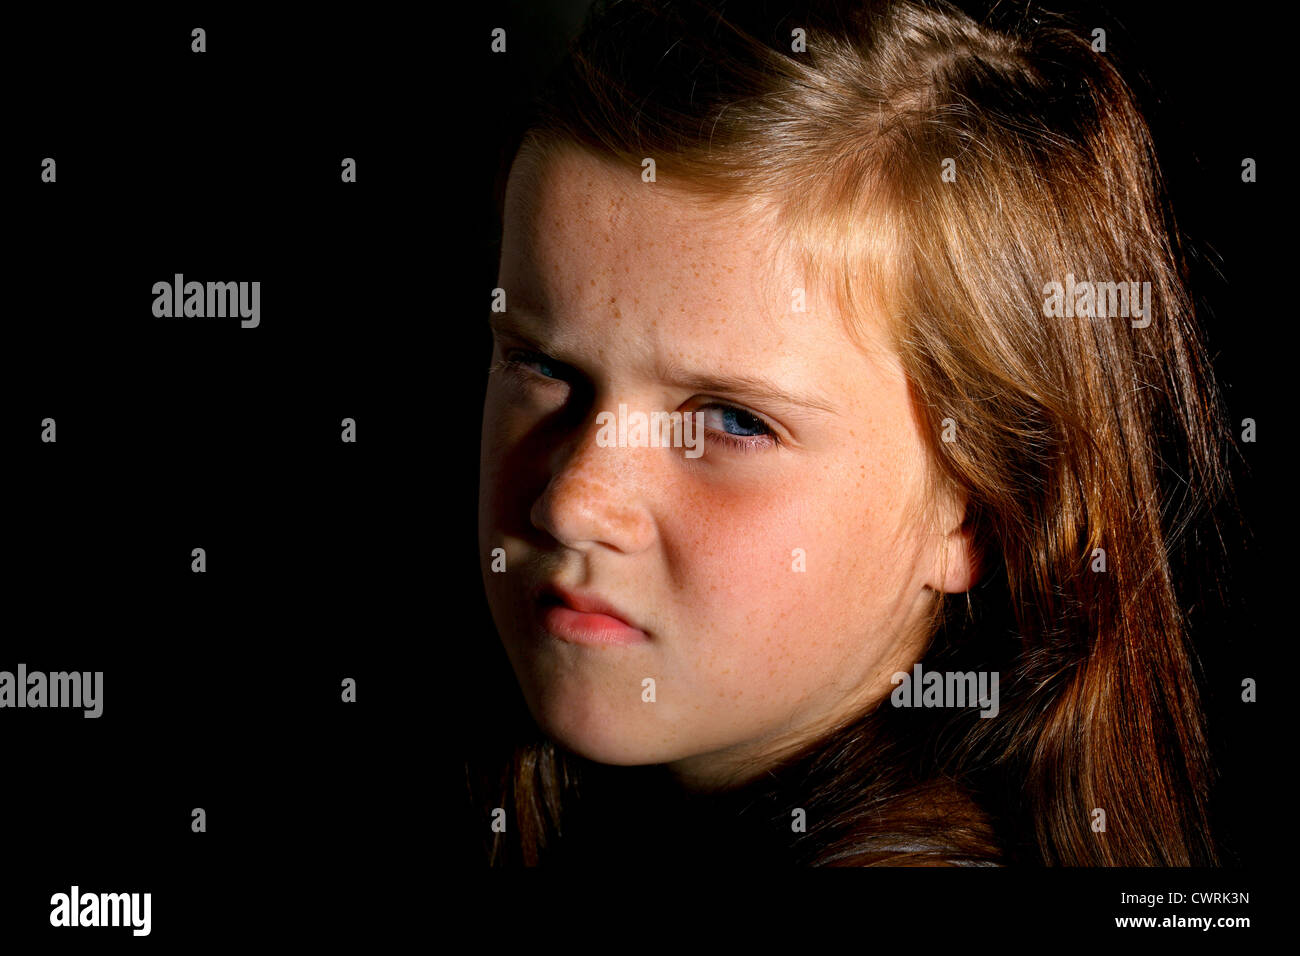 Ein 10 Jahre altes Mädchen schaut in Richtung Kamera an einem Abend Sonne Stockfoto